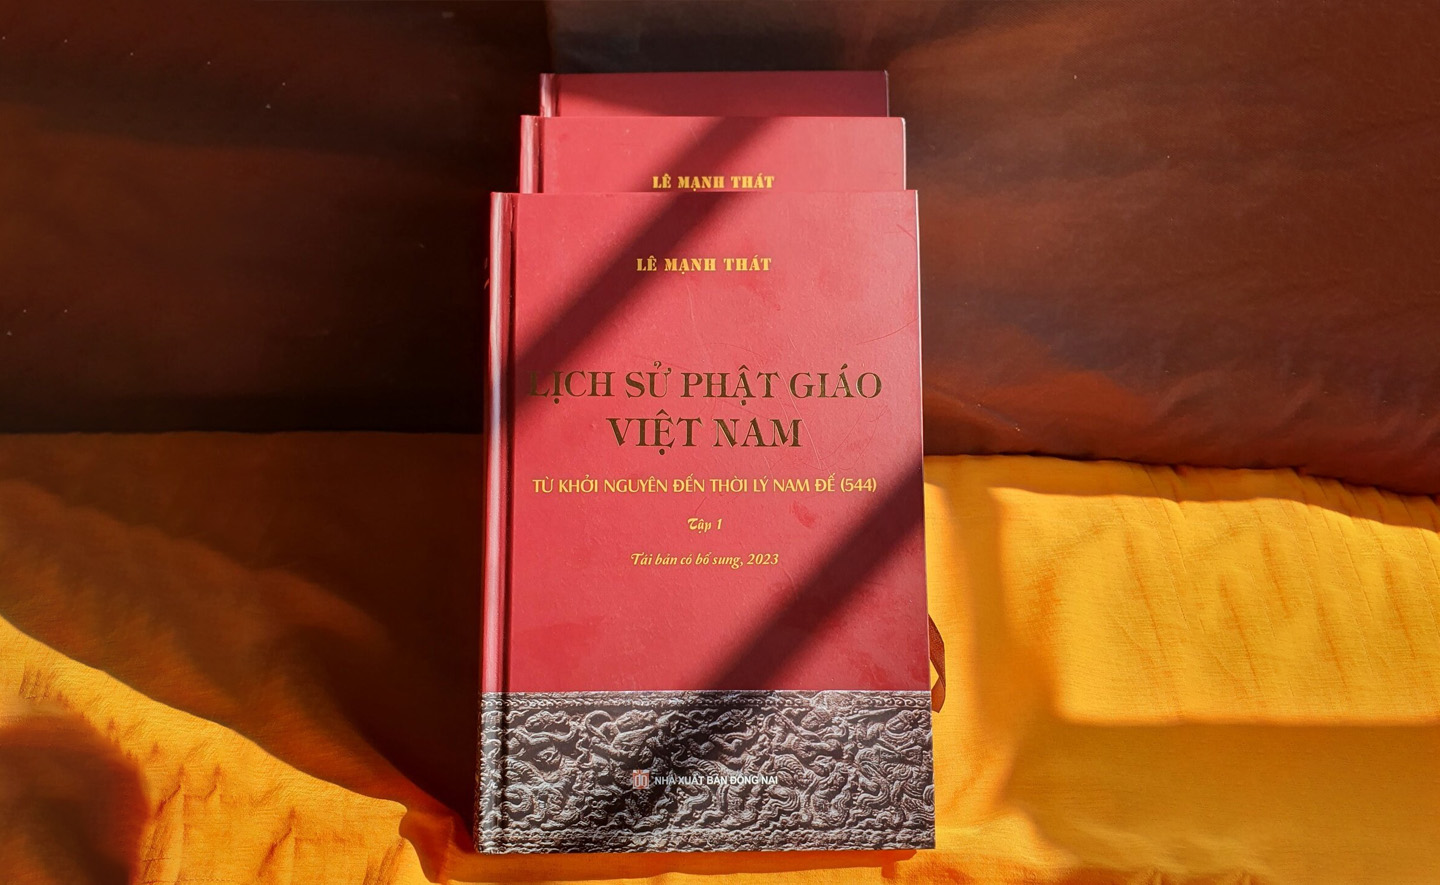 Tái bản bộ sách 'Lịch sử Phật giáo Việt Nam' sau 24 năm